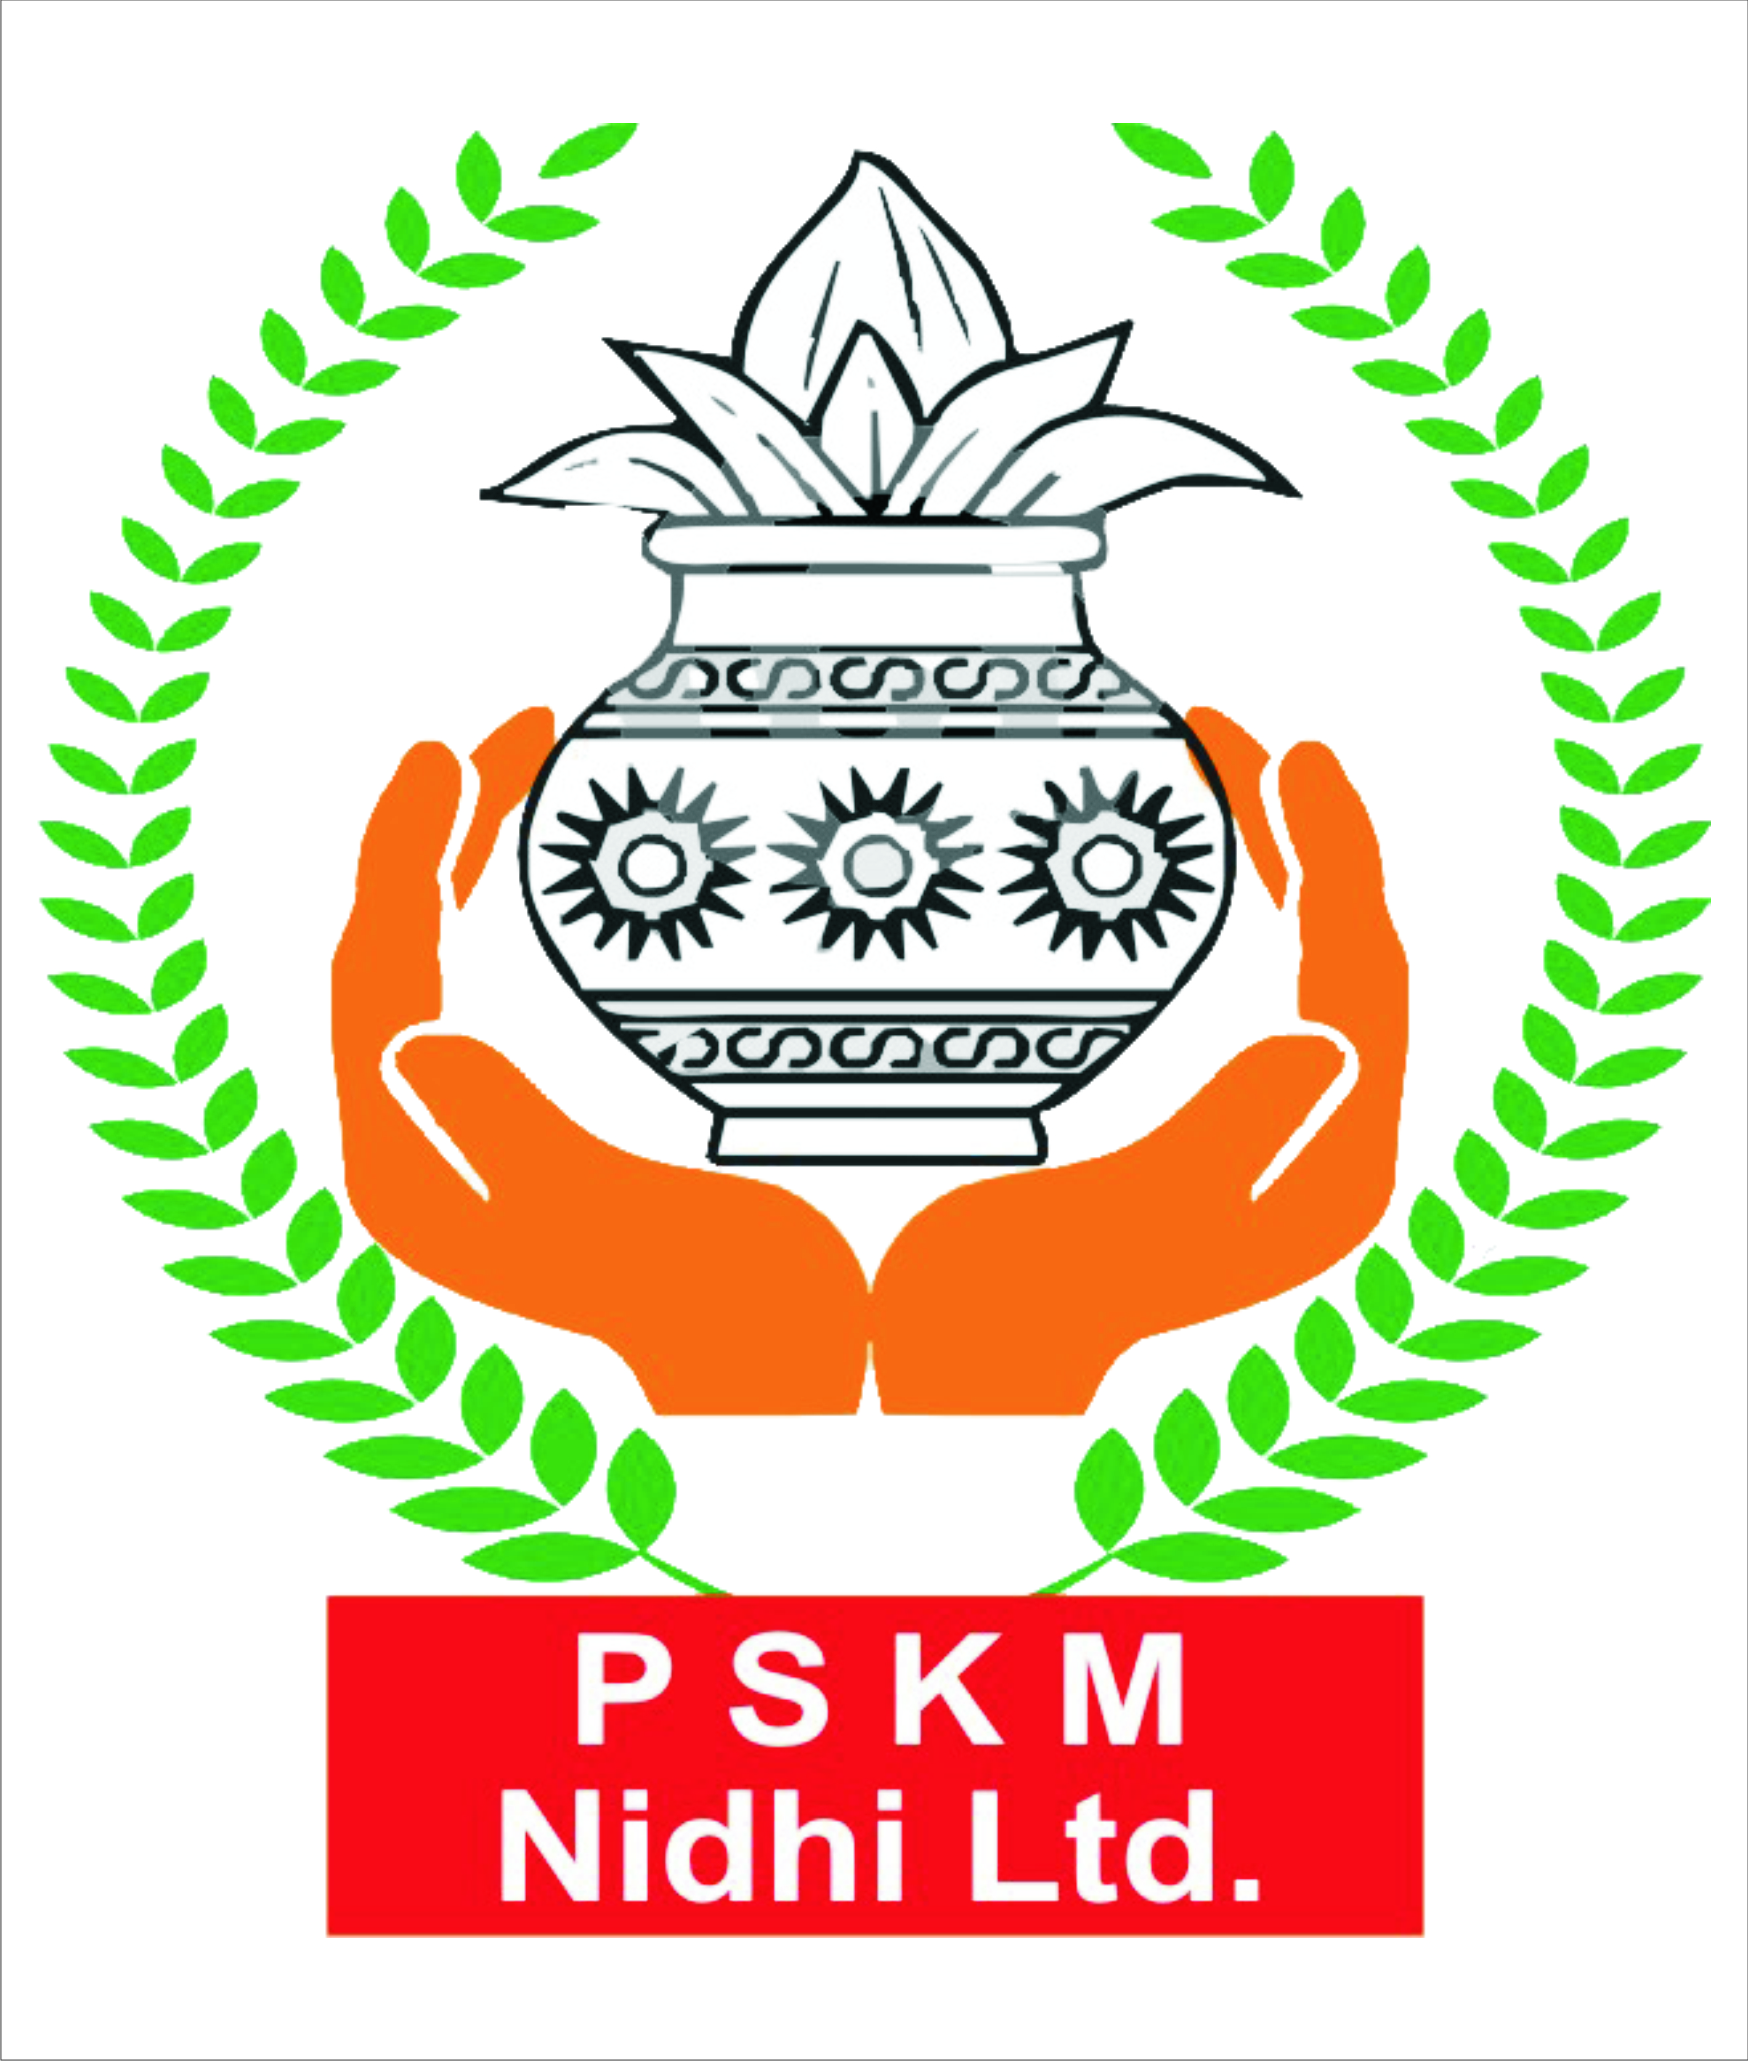 P.S.K.M. NIDHI LTD - Best...